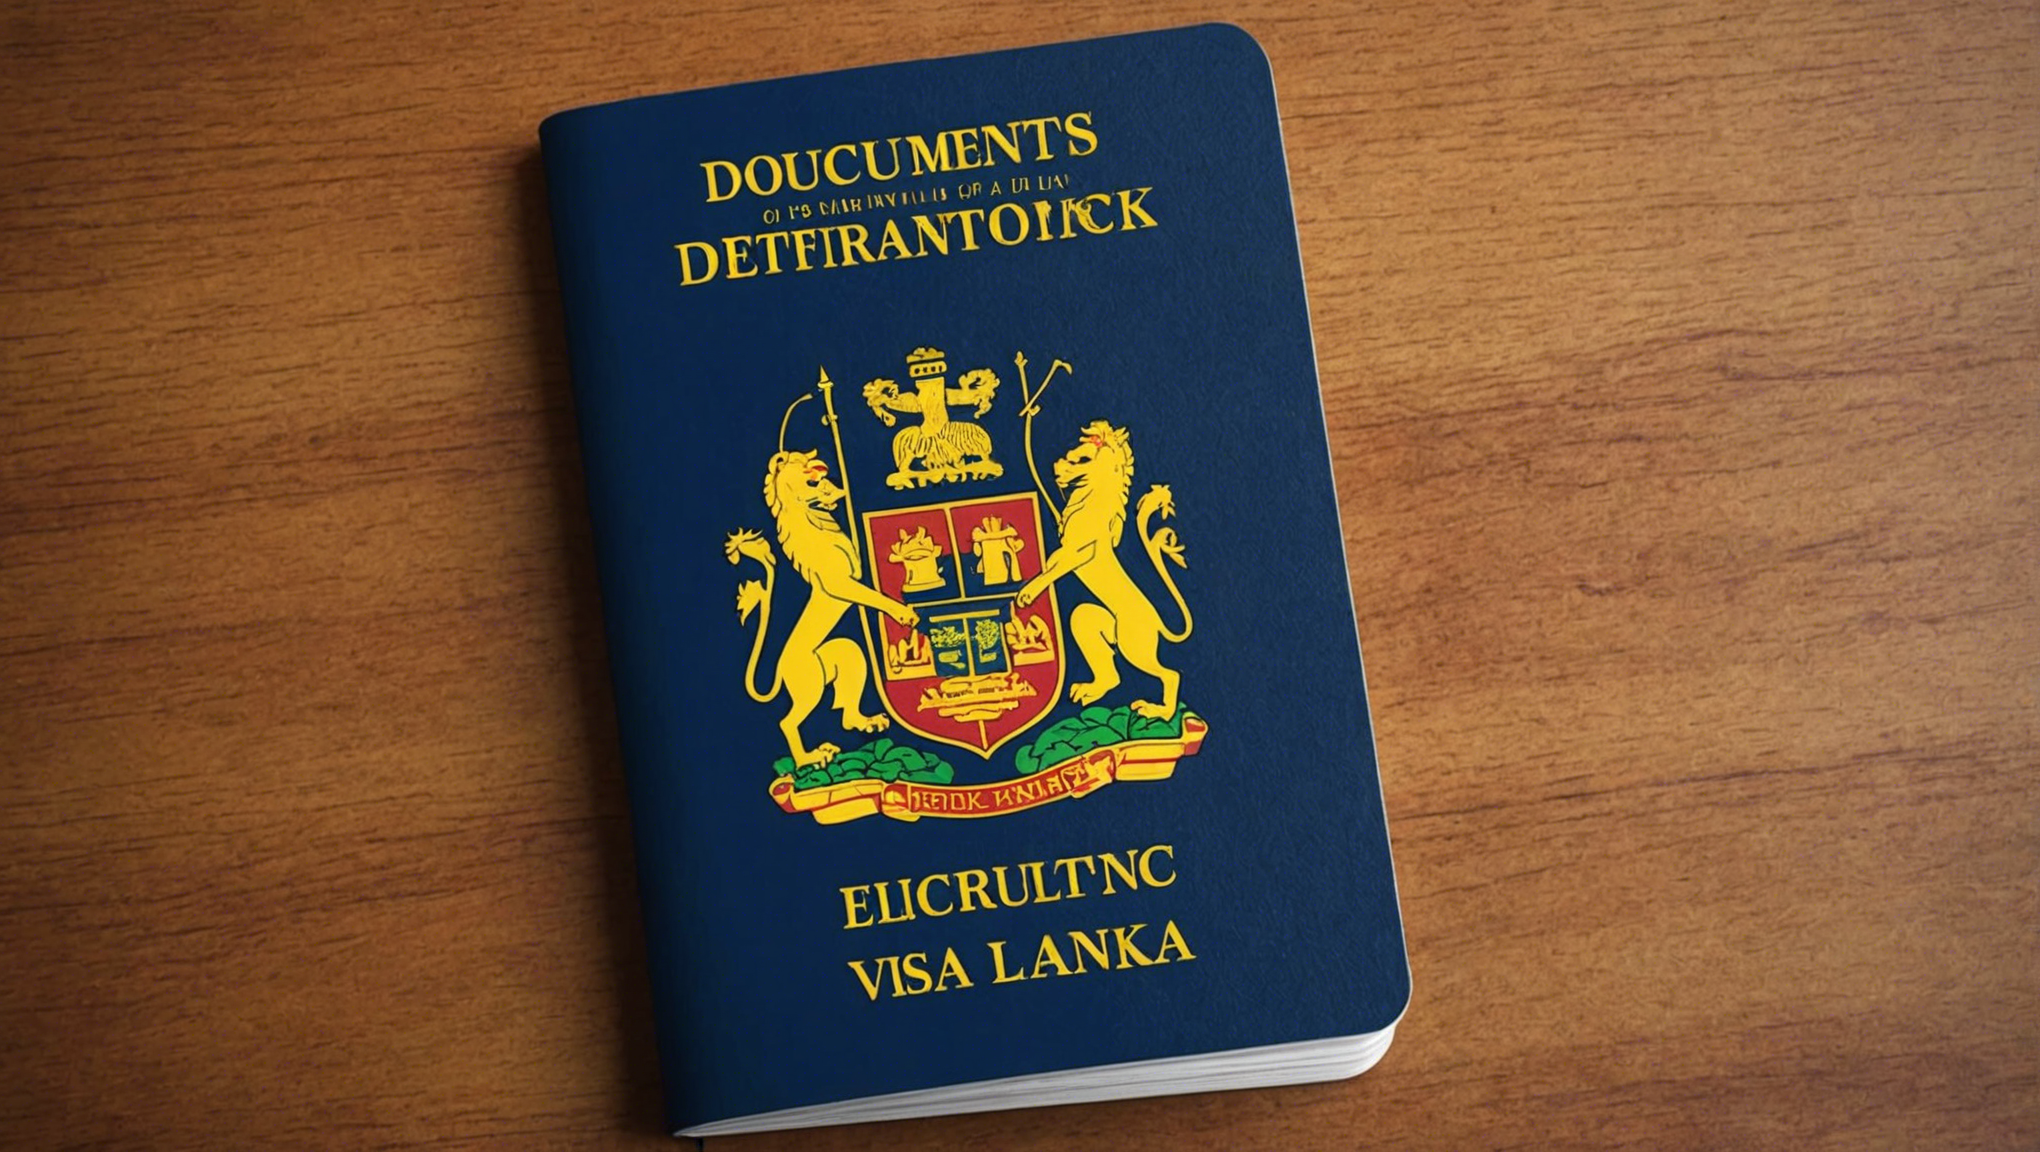 descubra qué documentos necesita para solicitar un visado electrónico para sri lanka y facilitar los trámites administrativos.